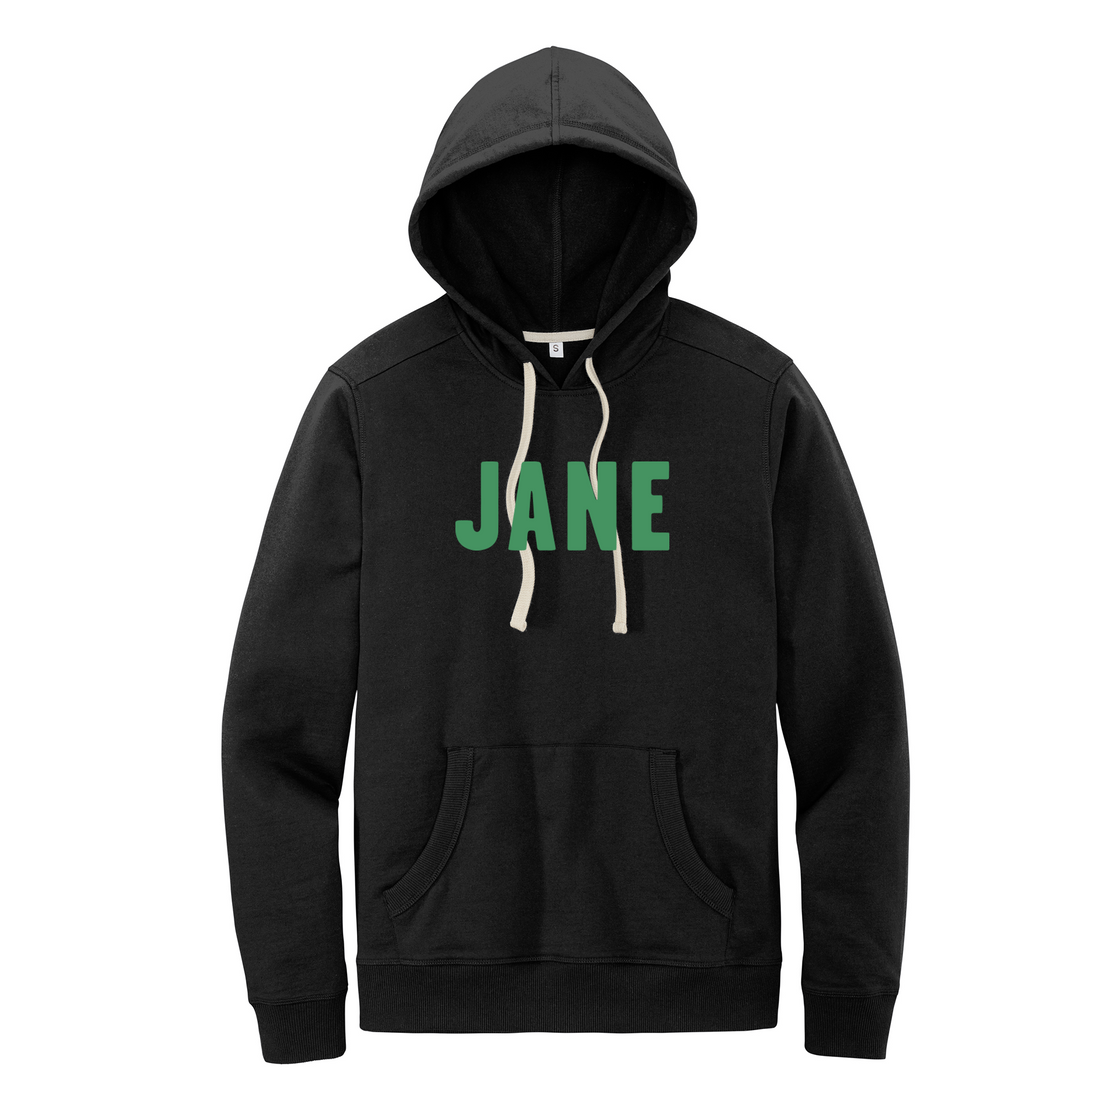 Unisex JANE Hoodie Sweatshirt in Black with Green Letters